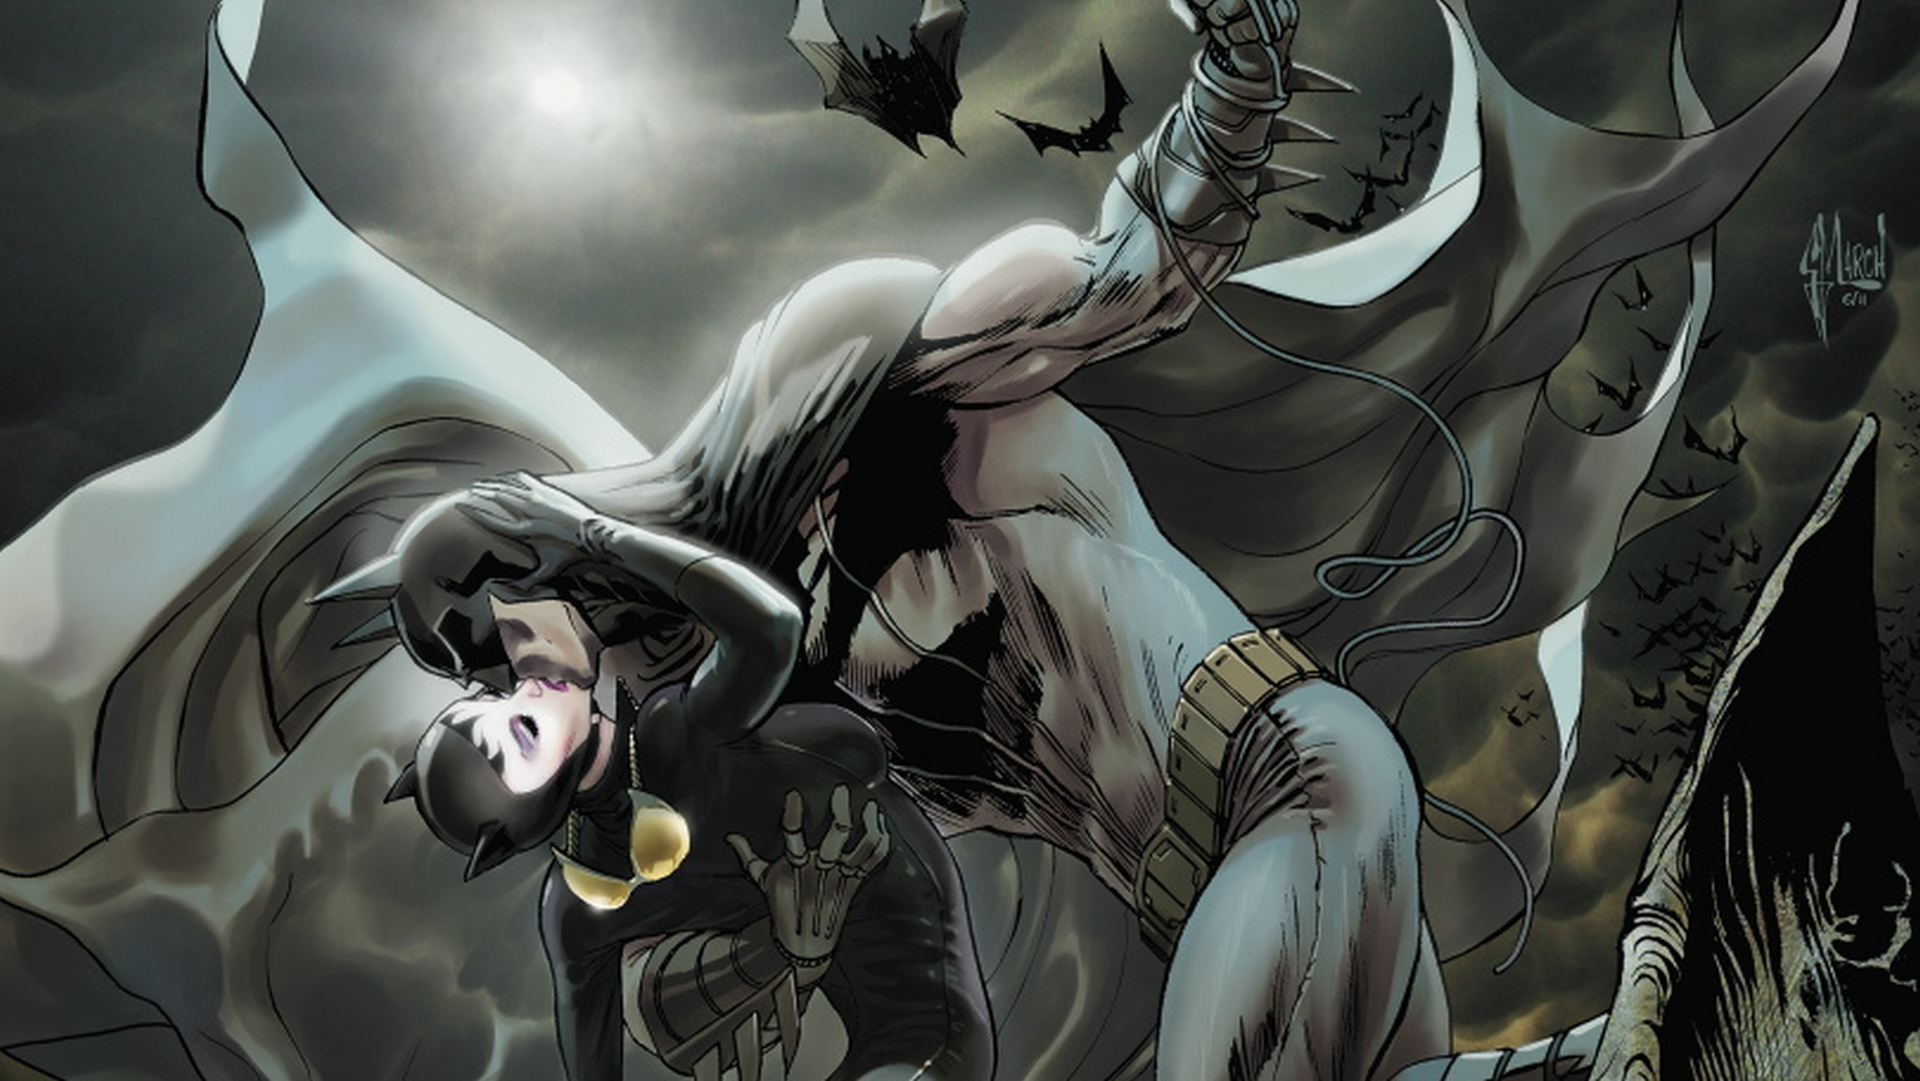 49+] Batman and Catwoman Wallpaper - WallpaperSafari